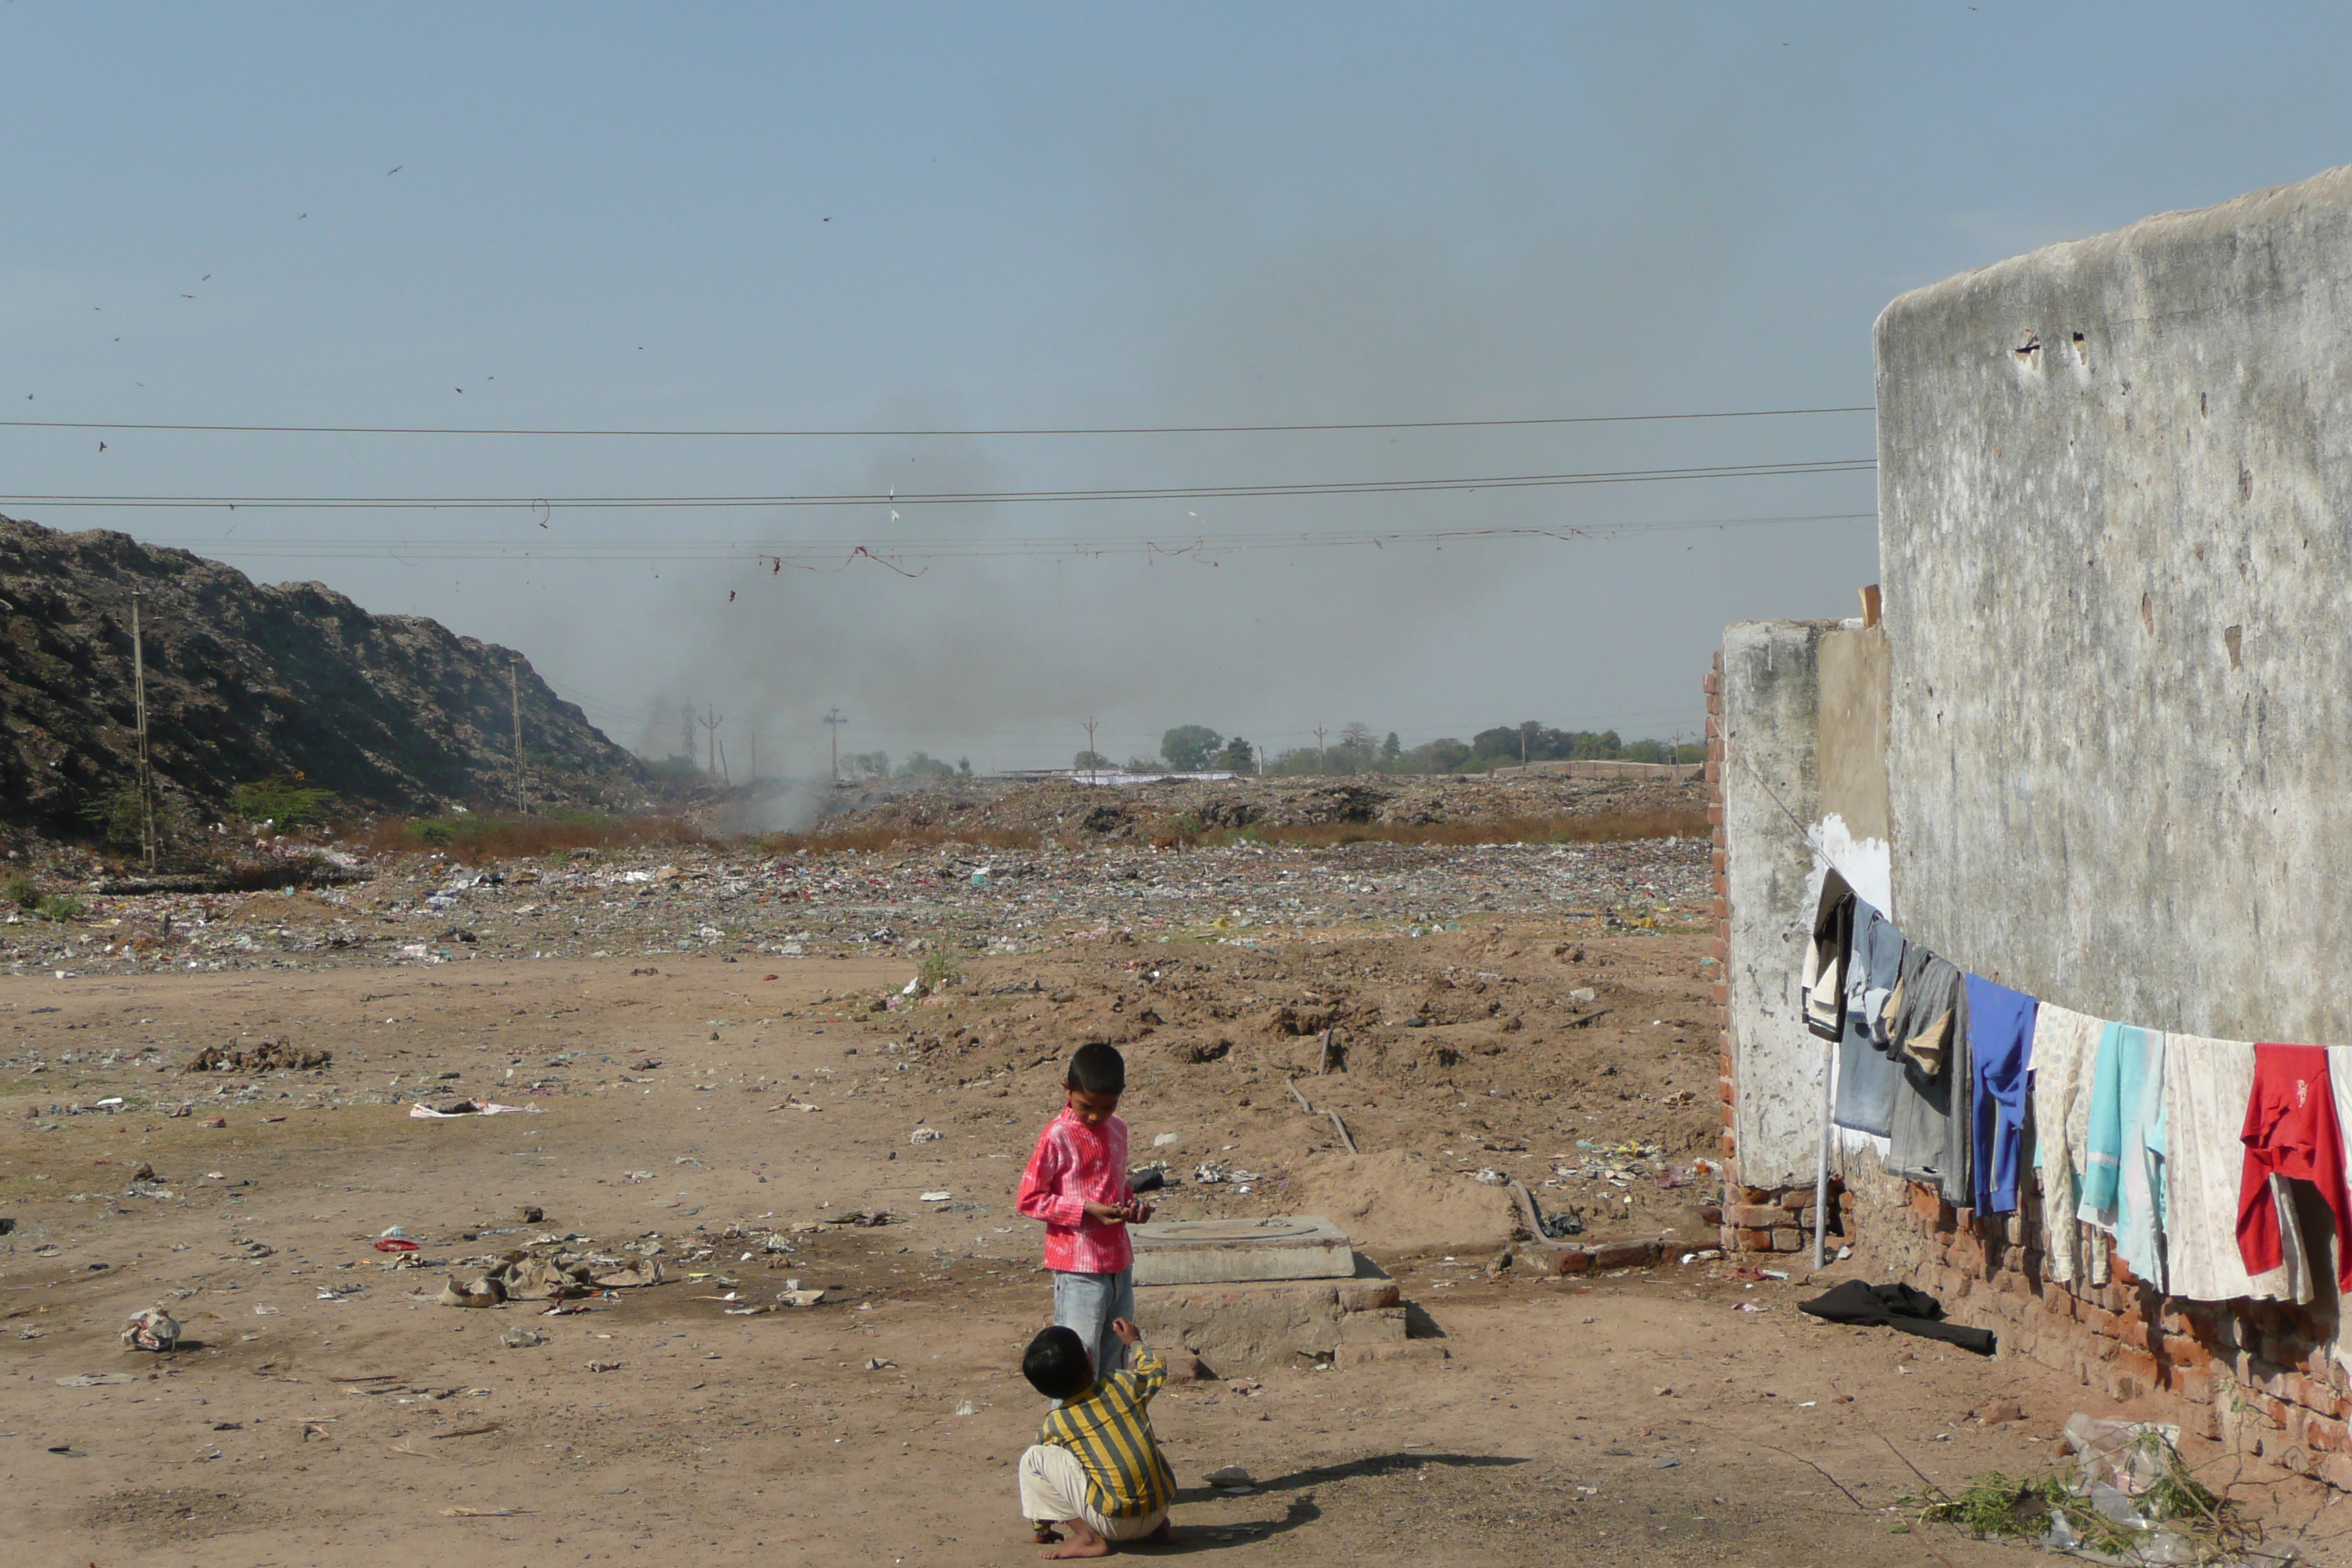 حي من الصفيح واقع في ضواحي مدينة أحمد آباد باسم سيتيزن-ناغر "مستوطنة المواطنين" - الهند.  Foto: Dominik Müller